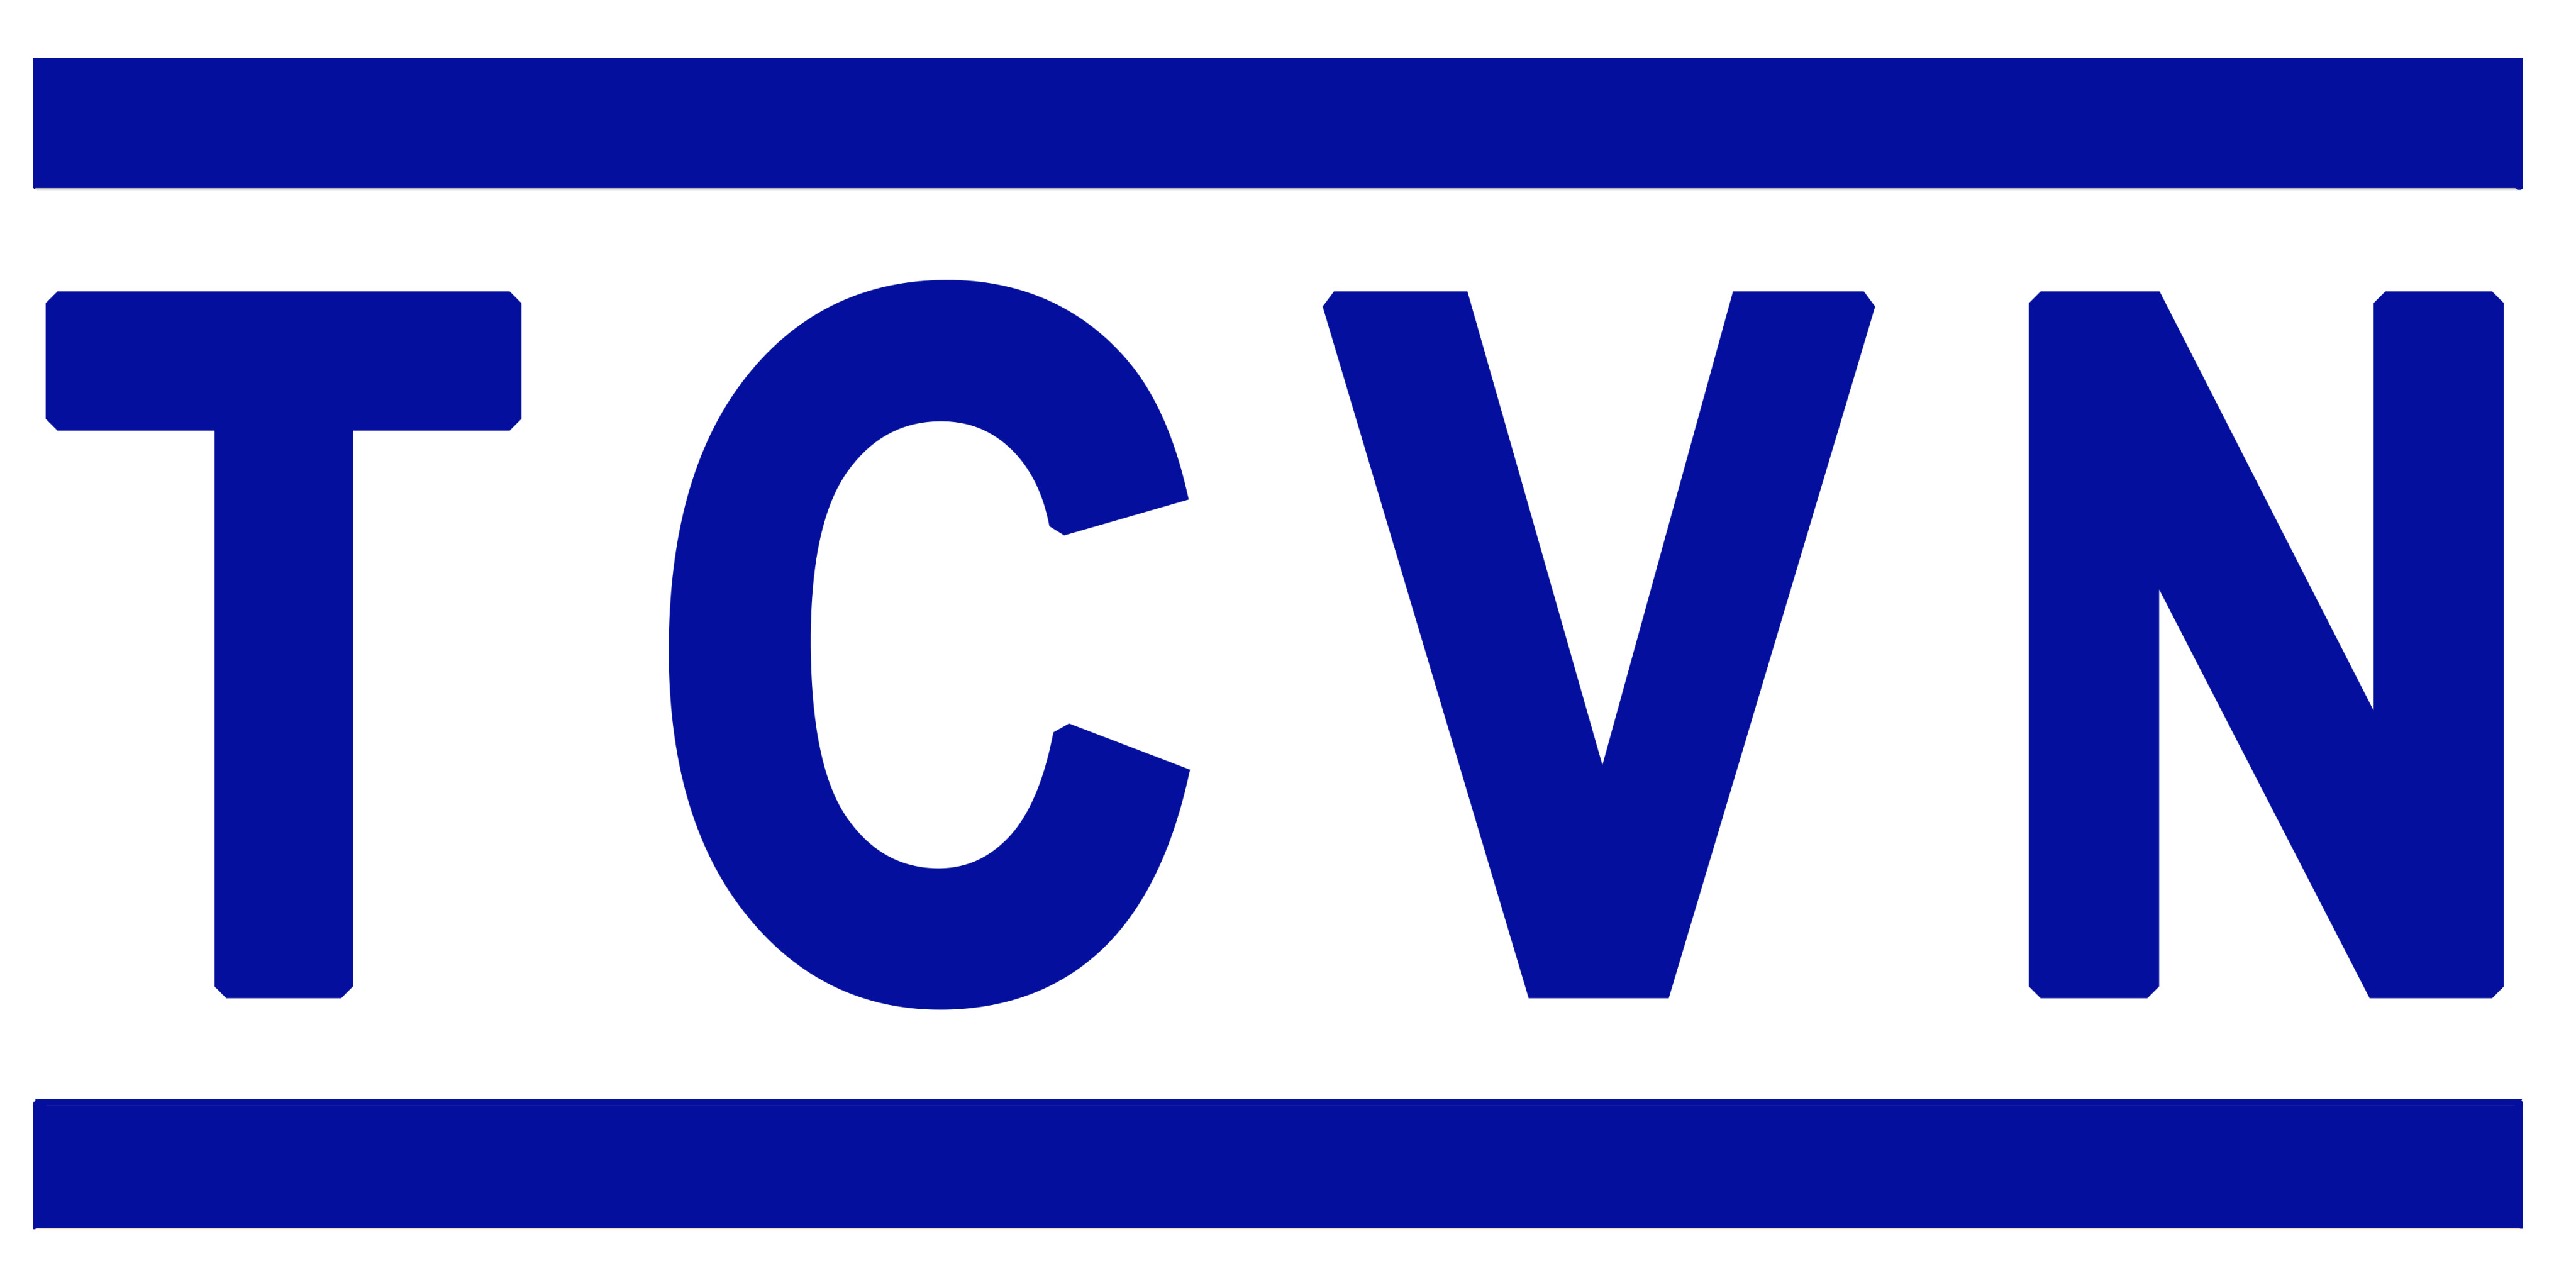 Danh mục tiêu chuẩn Quốc Gia (TCVN) công bố trong tháng 8 năm 2019